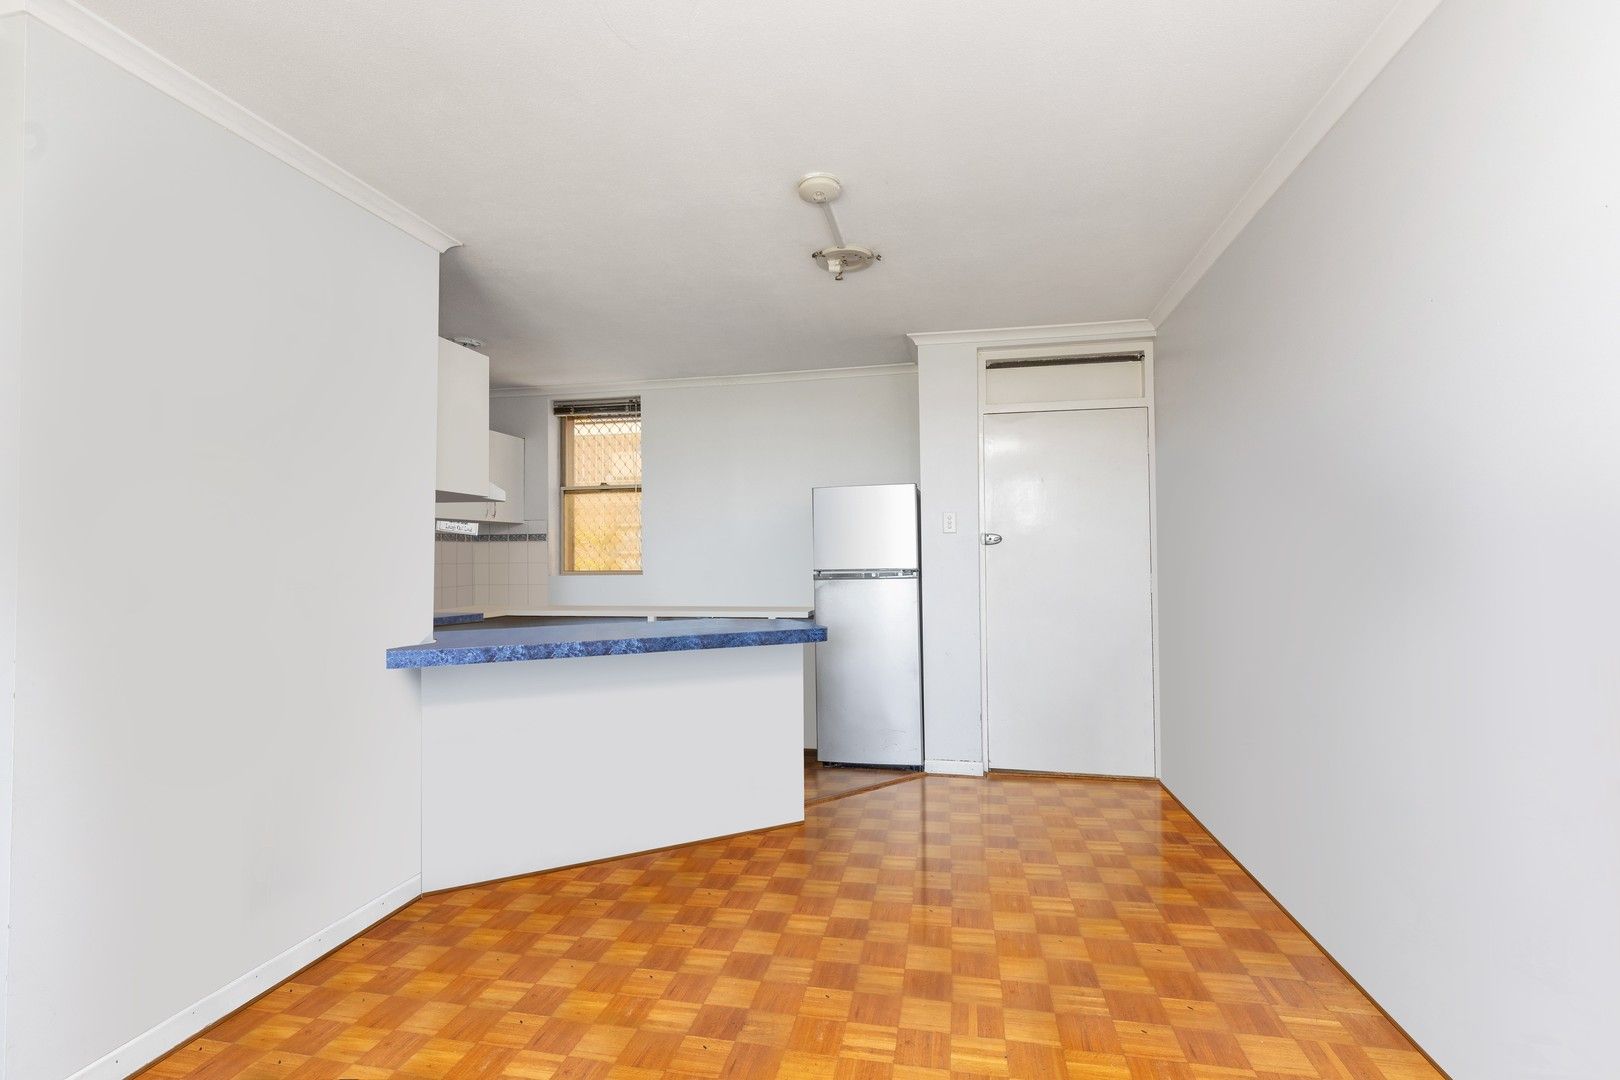 1 bedrooms Apartment / Unit / Flat in 26/409 Cambridge Street WEMBLEY WA, 6014